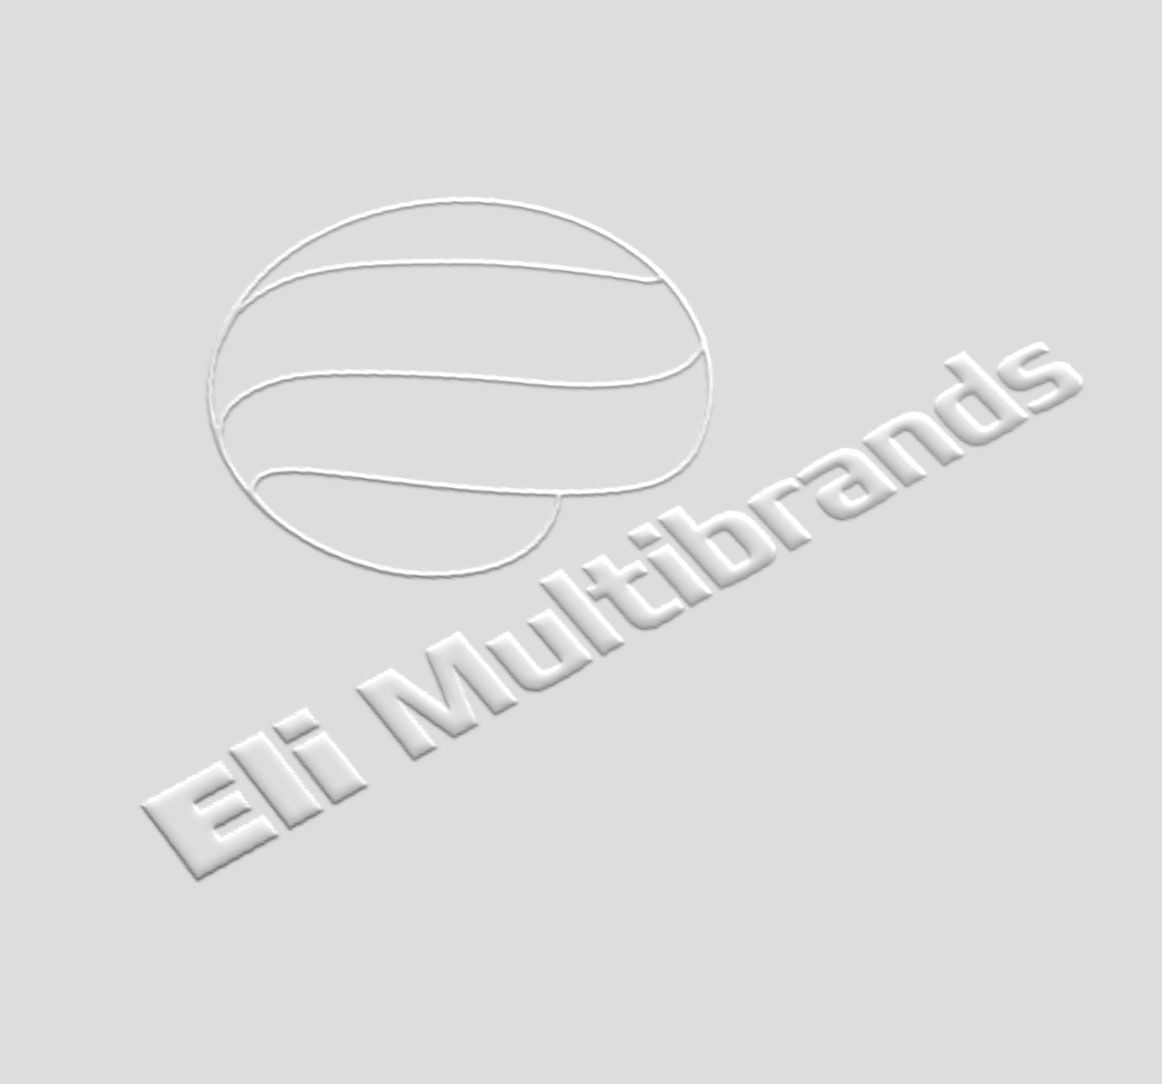 Логотип для компании ELI Multibrands - дизайнер zhutol